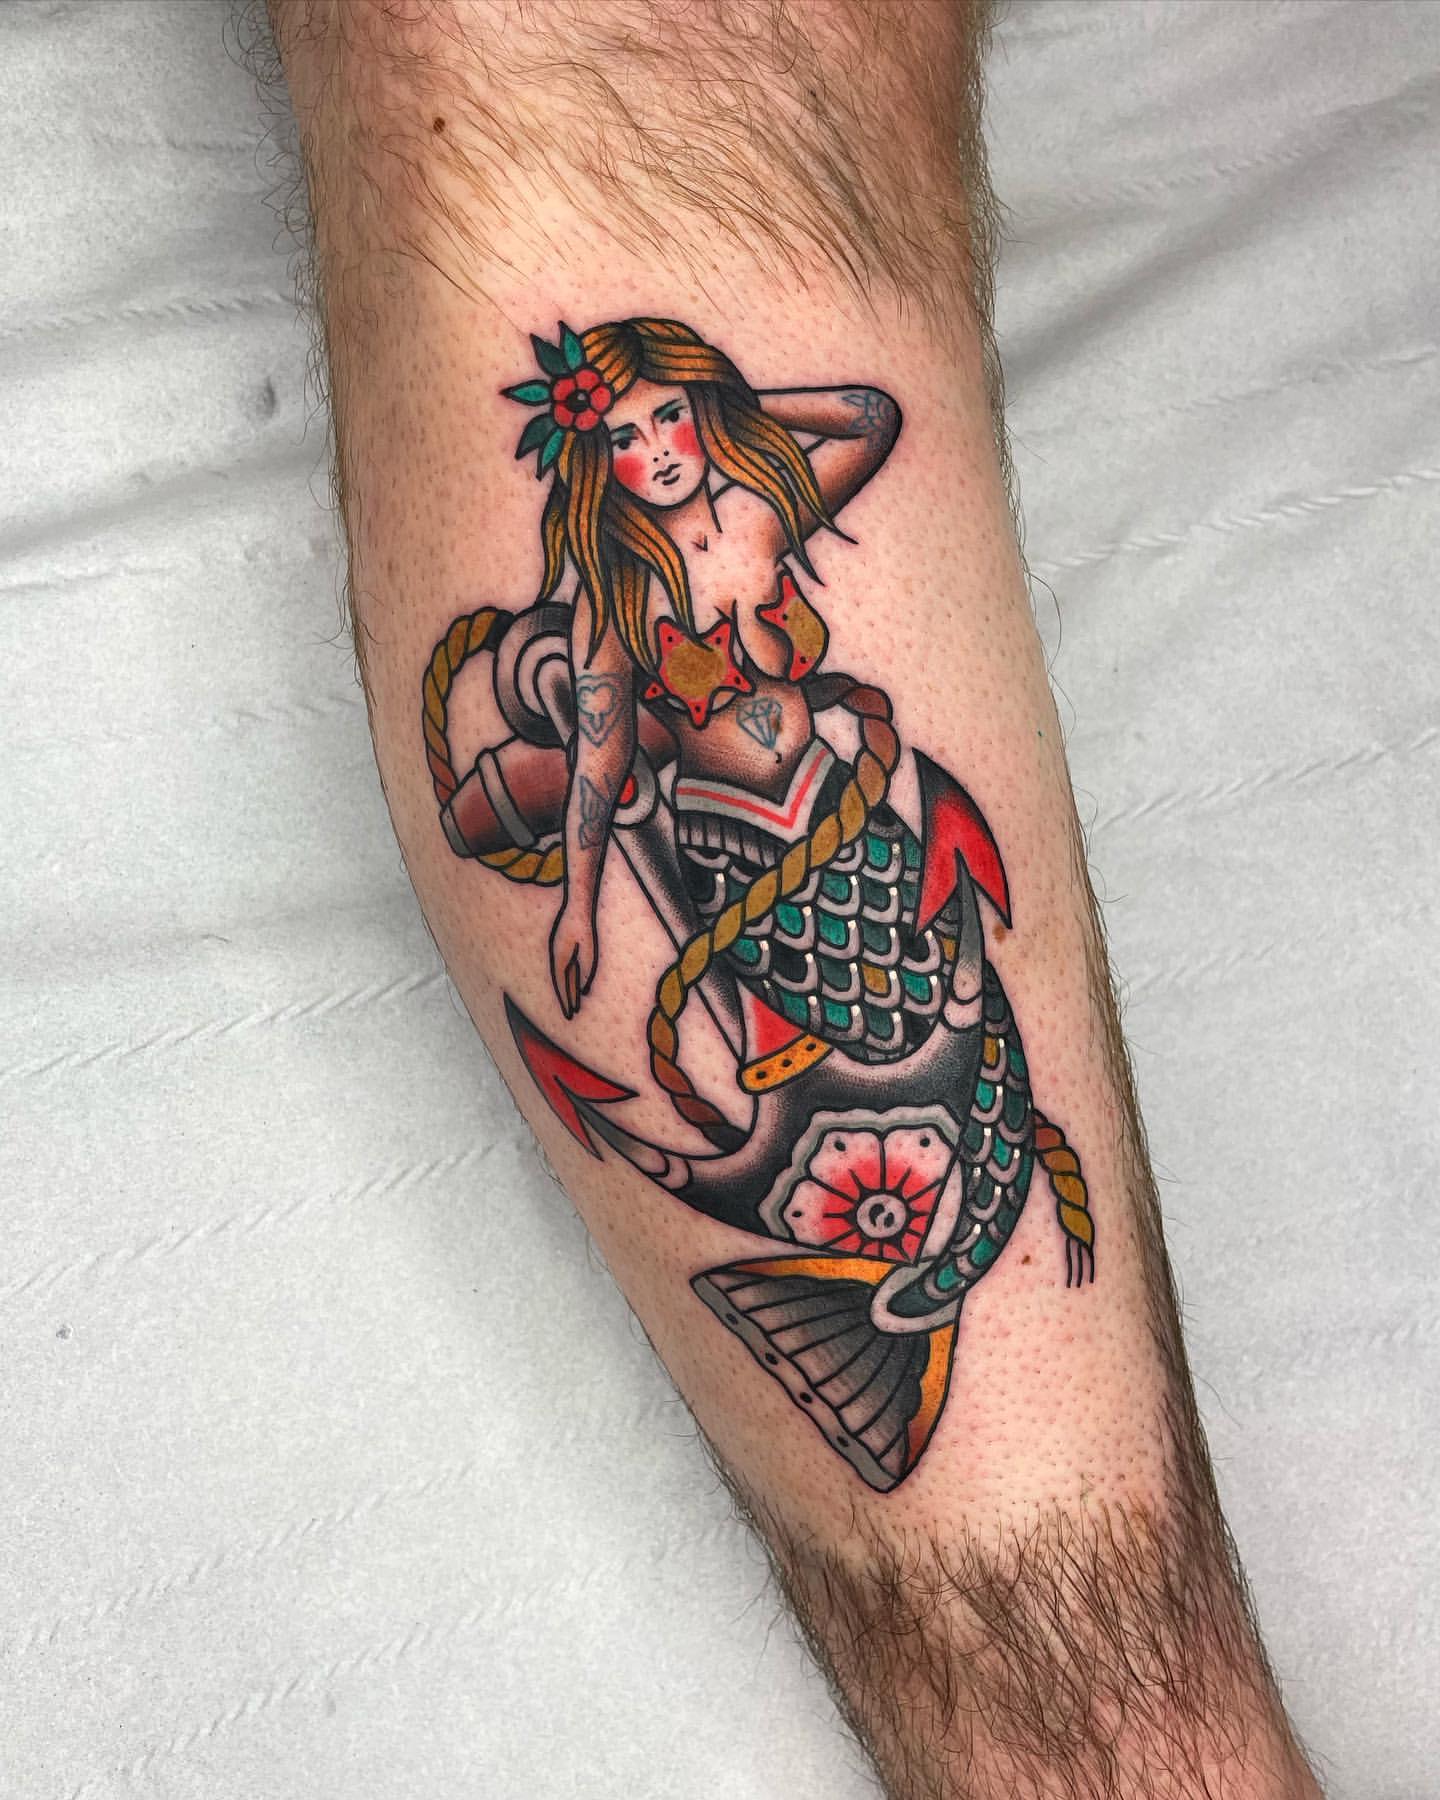 Sailor Jerry Tattoo Ideas 17